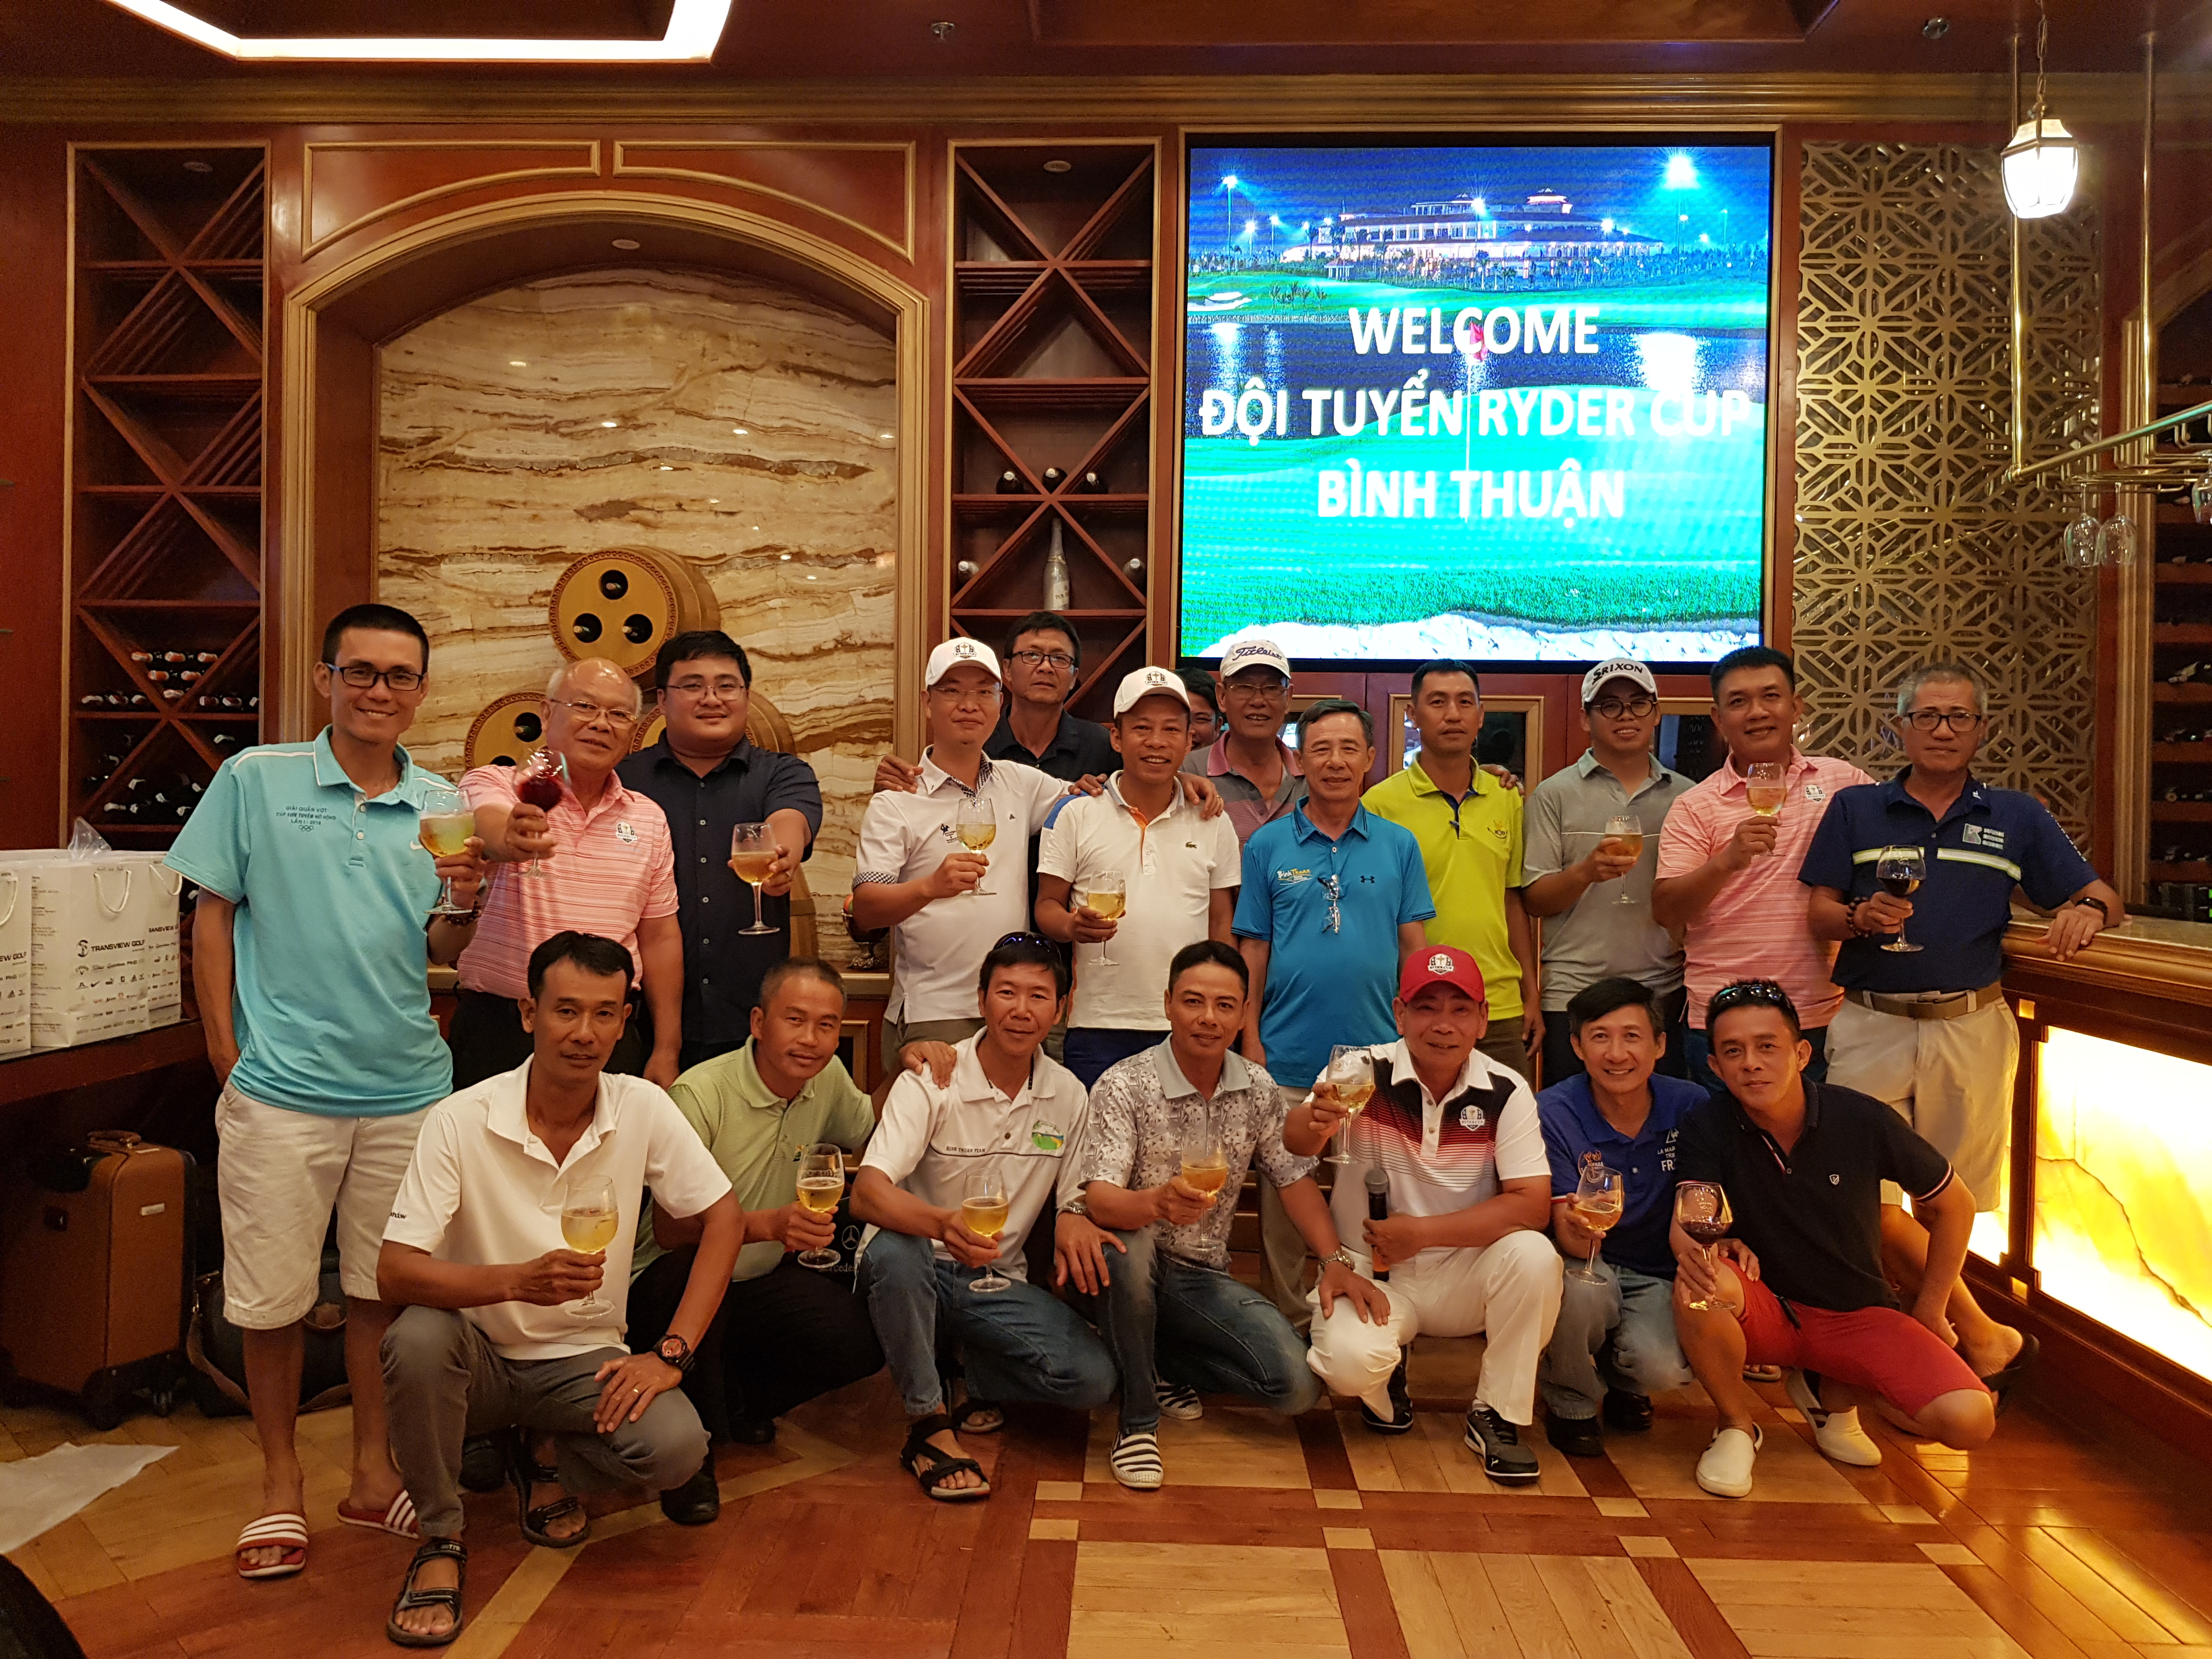 Đội trưởng tuyển Ryder Cup Bình Thuận: 'Chúng tôi và CLB Tân Sơn Nhất như anh em'